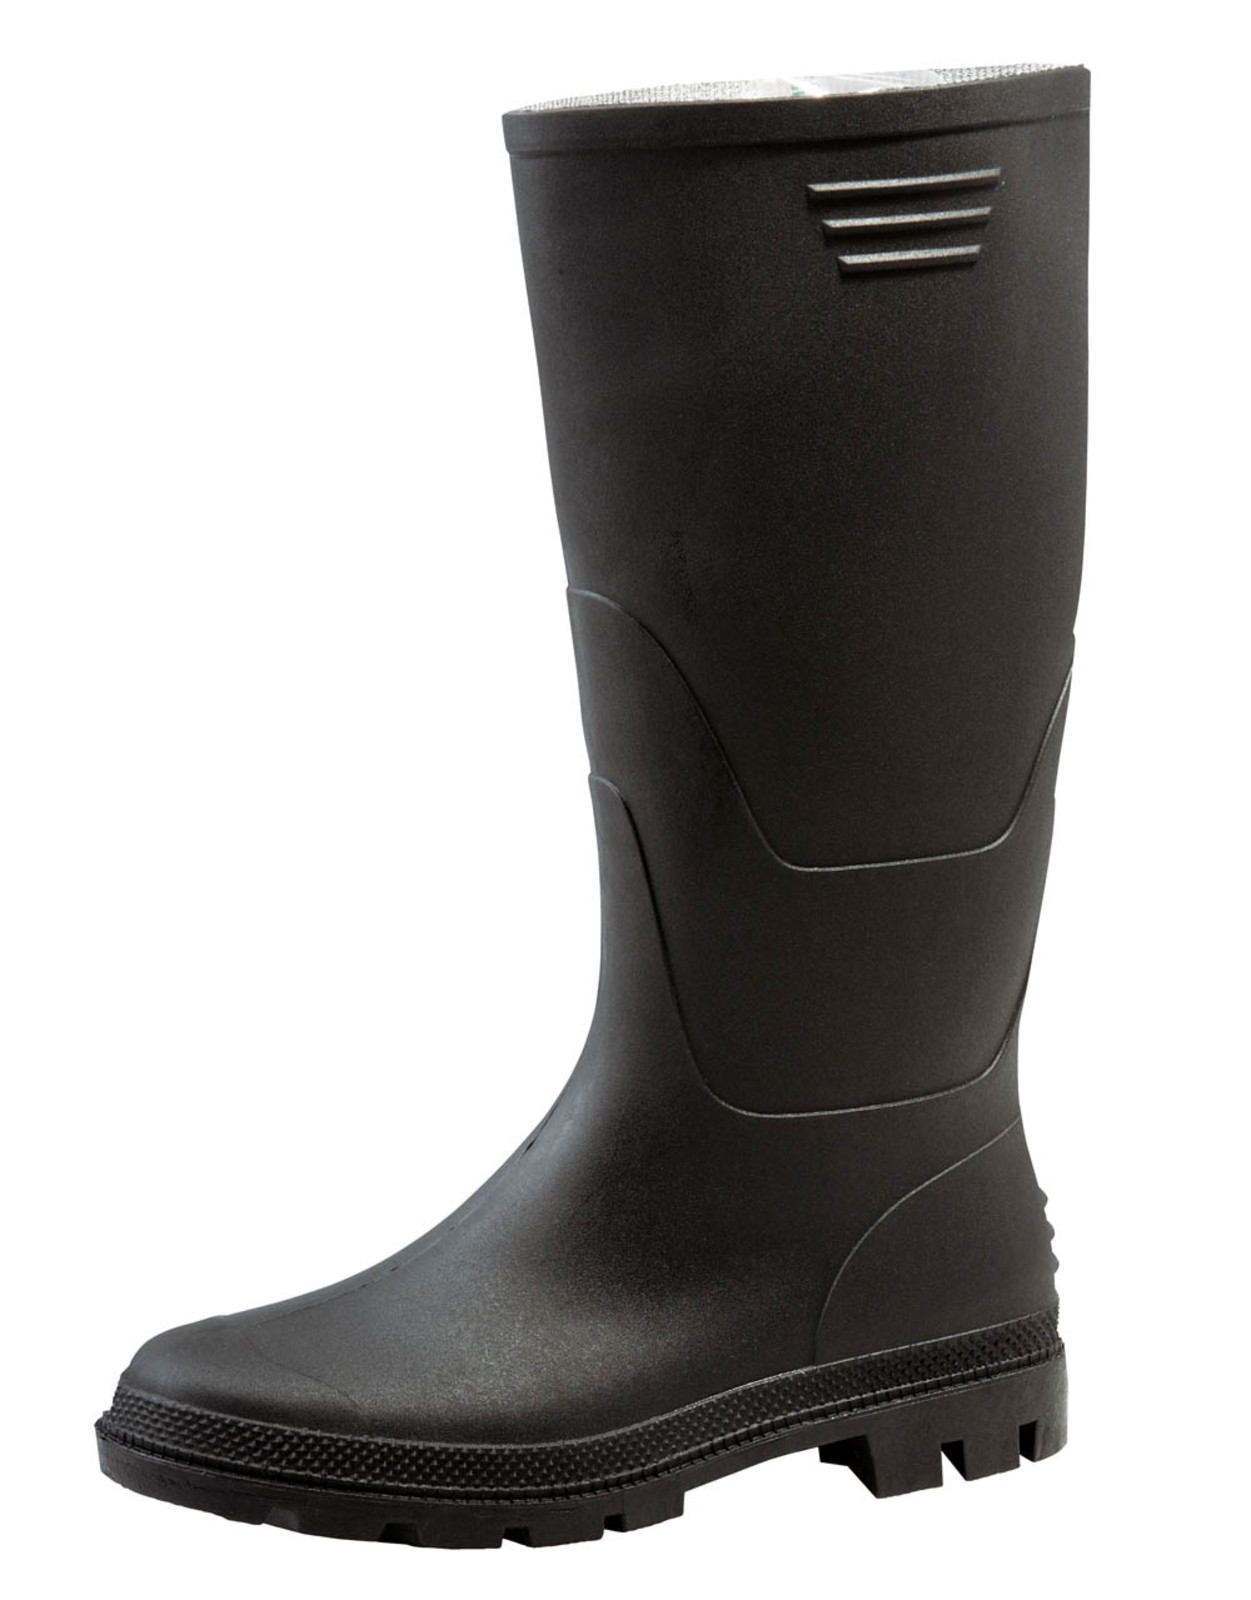 Gumáky Boots Ginocchio PVC - veľkosť: 38, farba: čierna